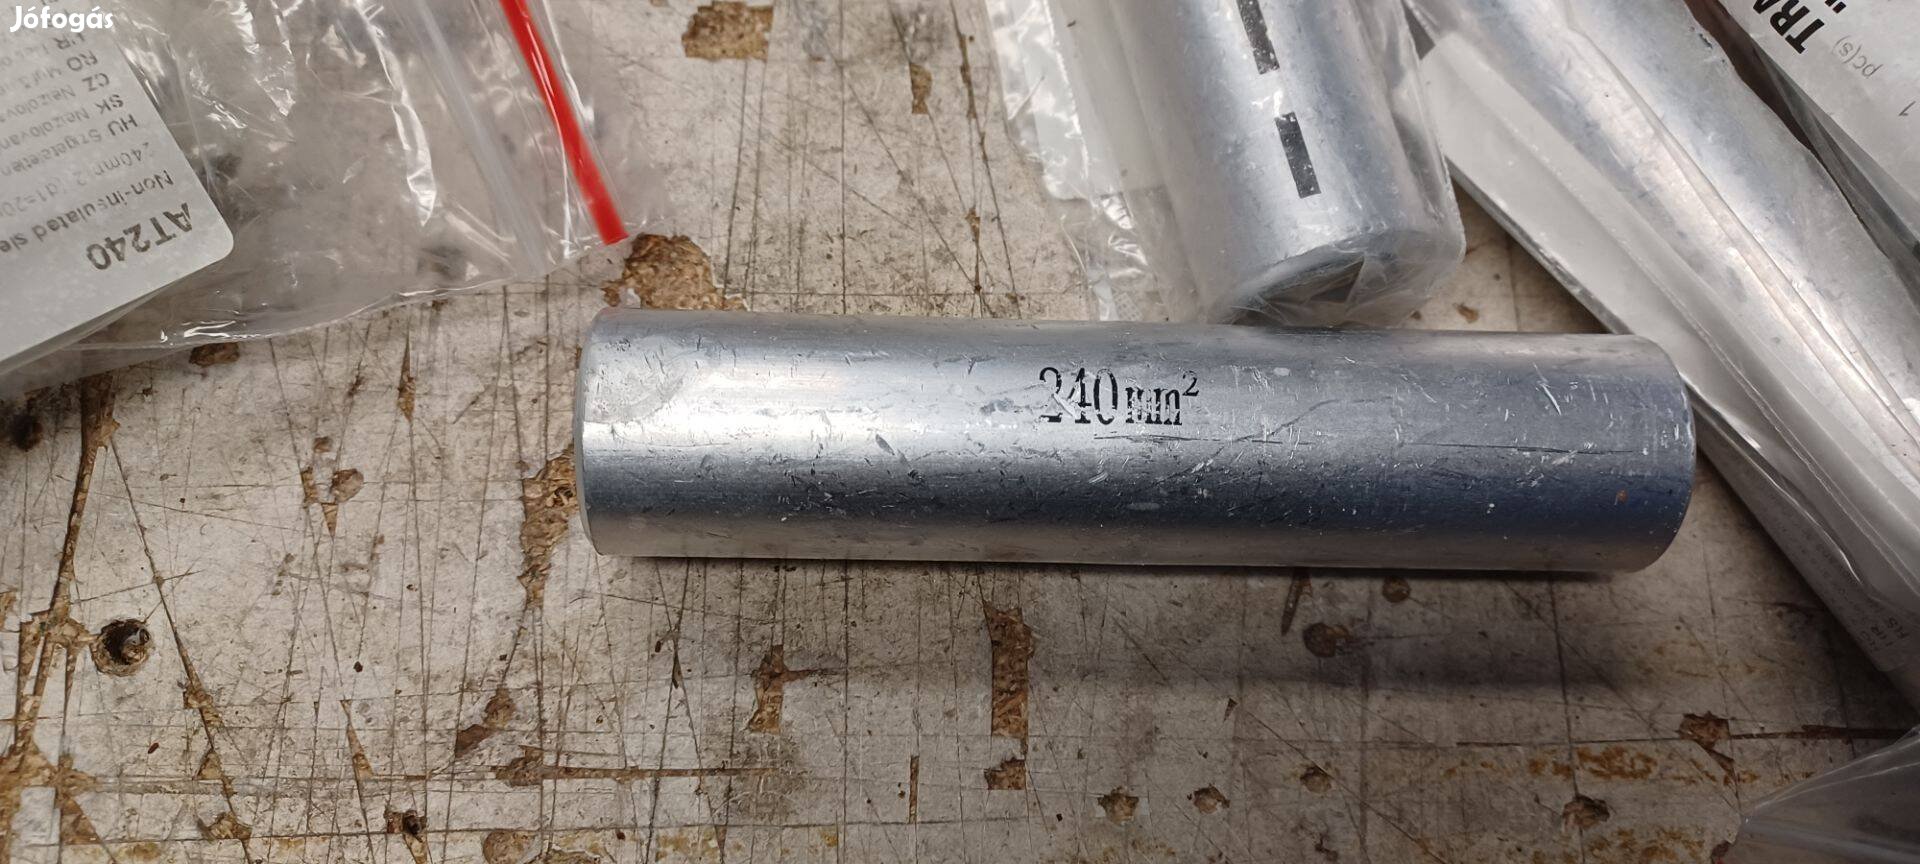 Alumínium toldóhüvely 240mm2 eladó